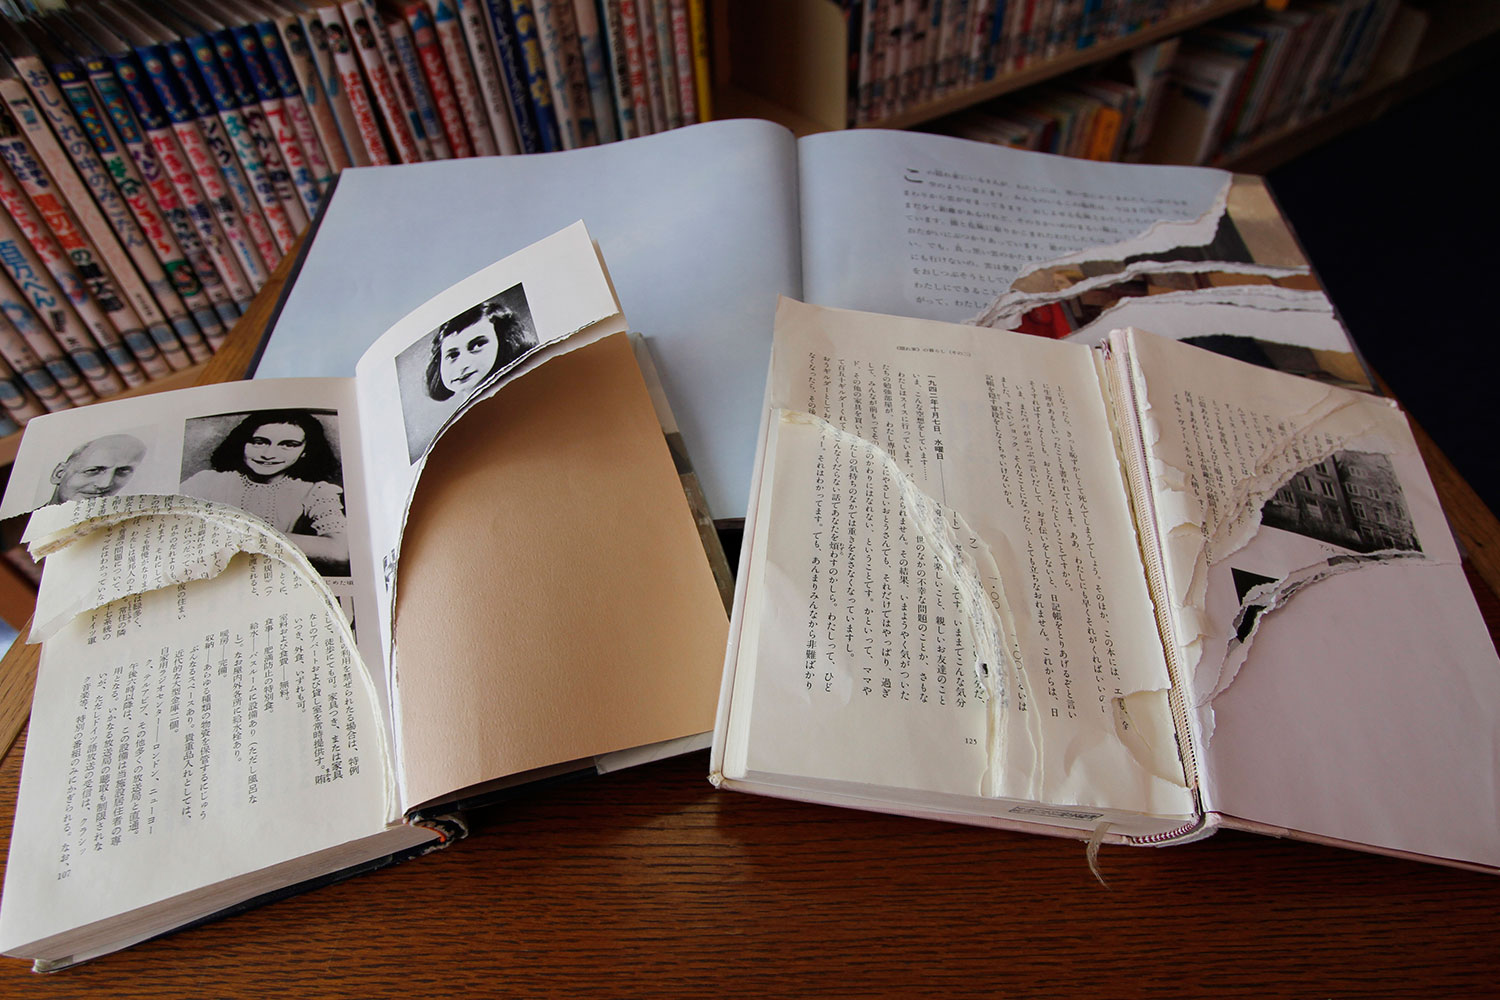 Destrozados más de 200 ejemplares del libro «El diario de Ana Frank» en varias bibliotecas de Tokio